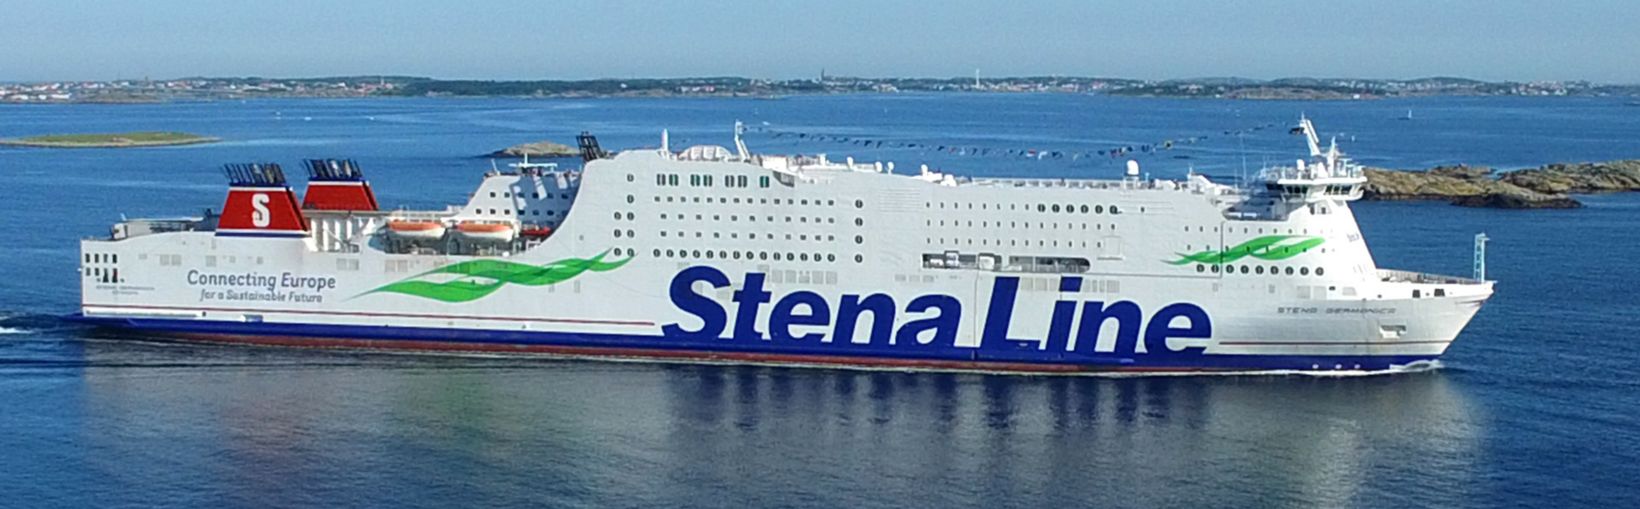 Stena Germanica ferry at sea